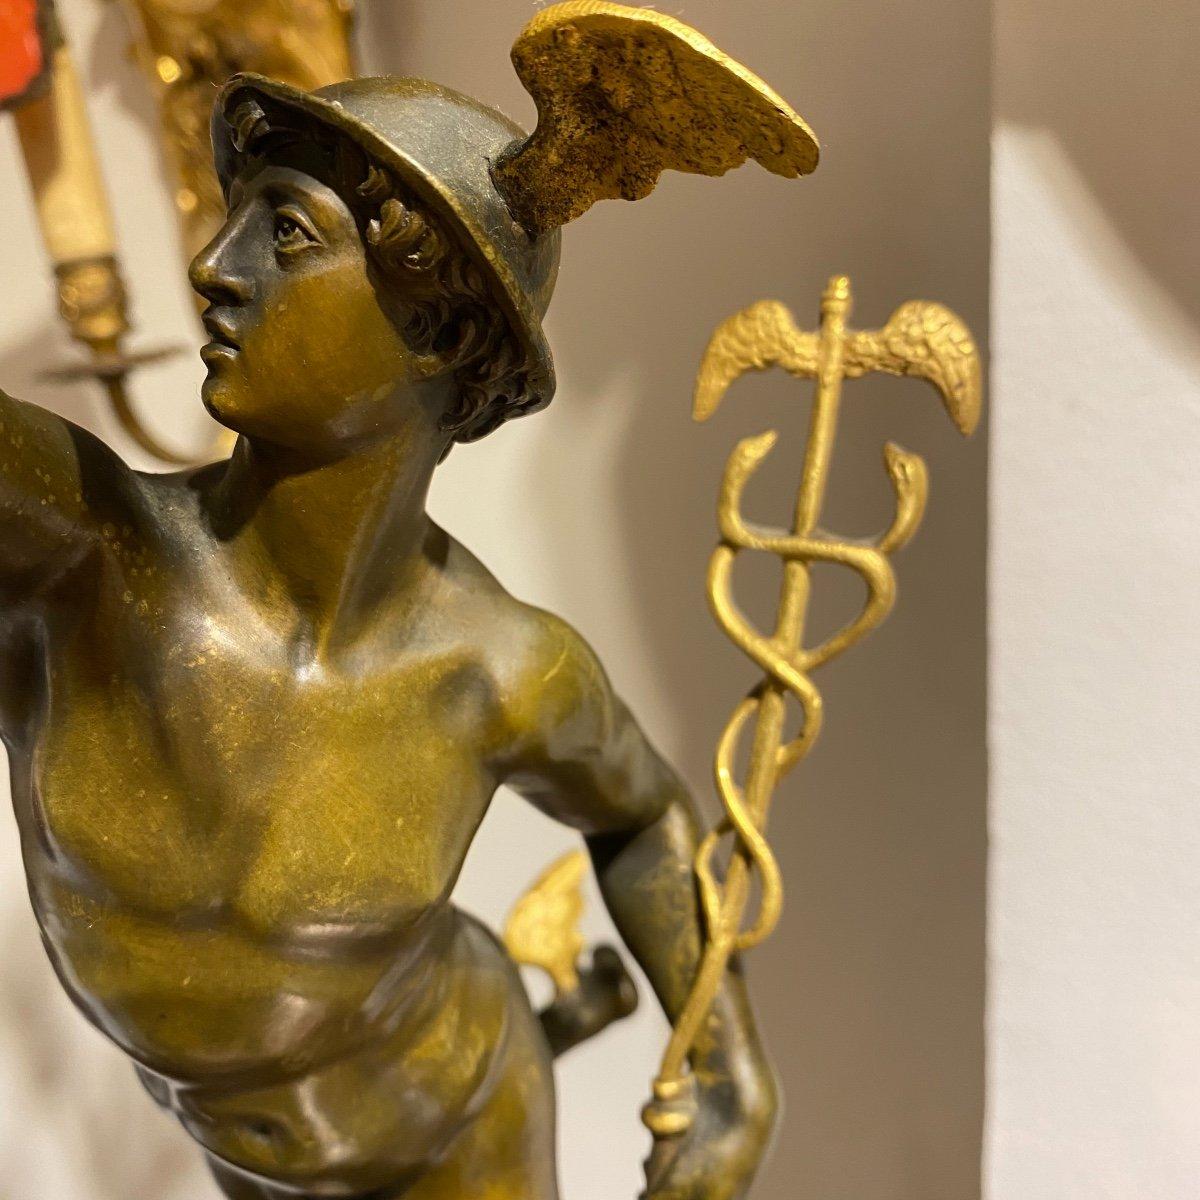 Ces impressionnants chandeliers en bronze de 78 cm de haut, représentant les figures mythologiques dorées et finement patinées d'Hermès et de Diane, reposent gracieusement sur des bases rondes et cannelées, ornées d'un anneau en bronze doré. Chaque